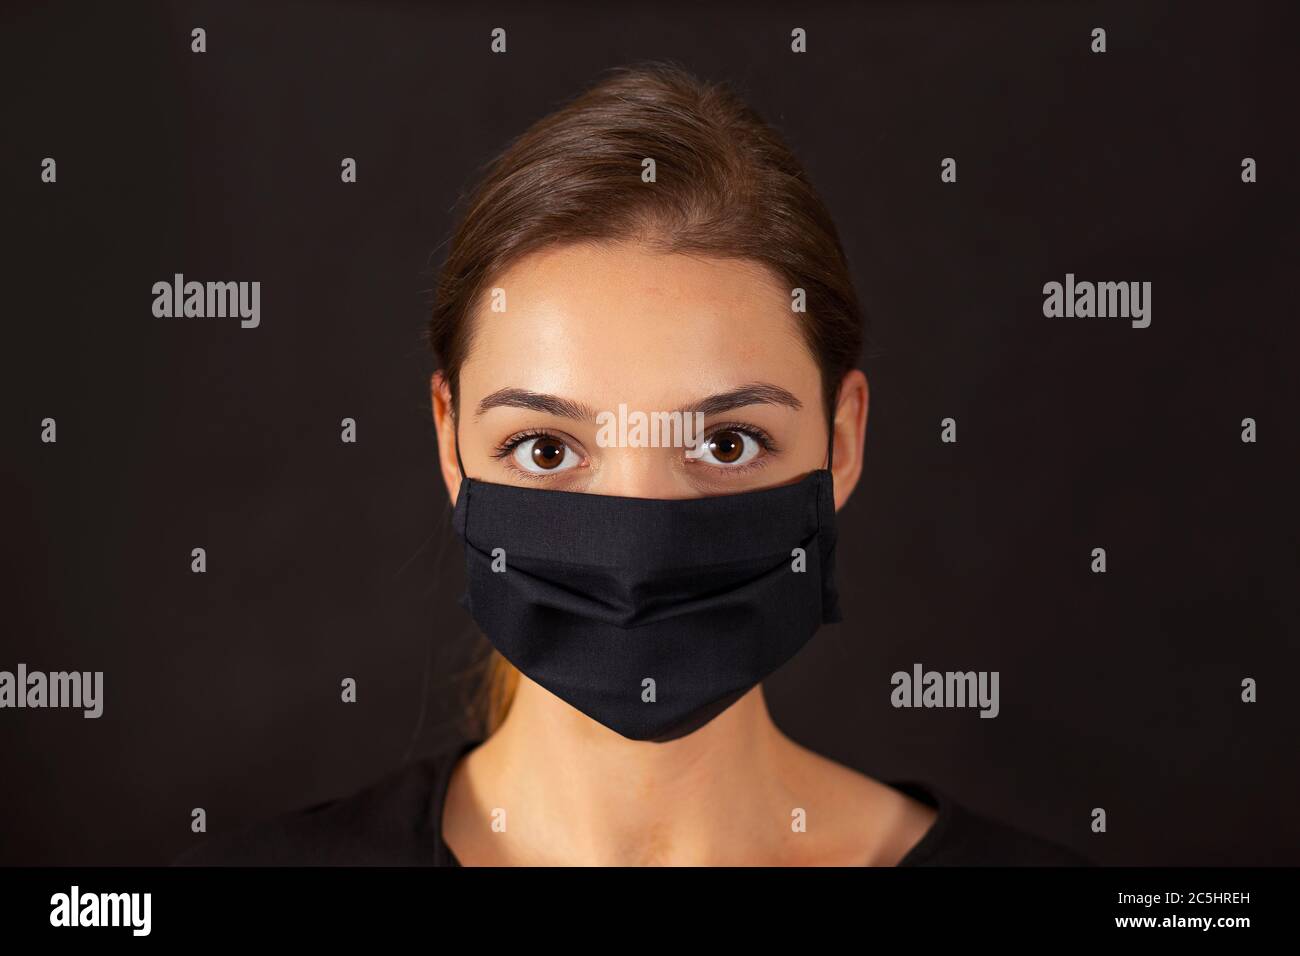 Nahaufnahme eines Mädchens, das während einer Pandemie von Covid-19 eine schwarze Stoffmaske trägt. Stockfoto